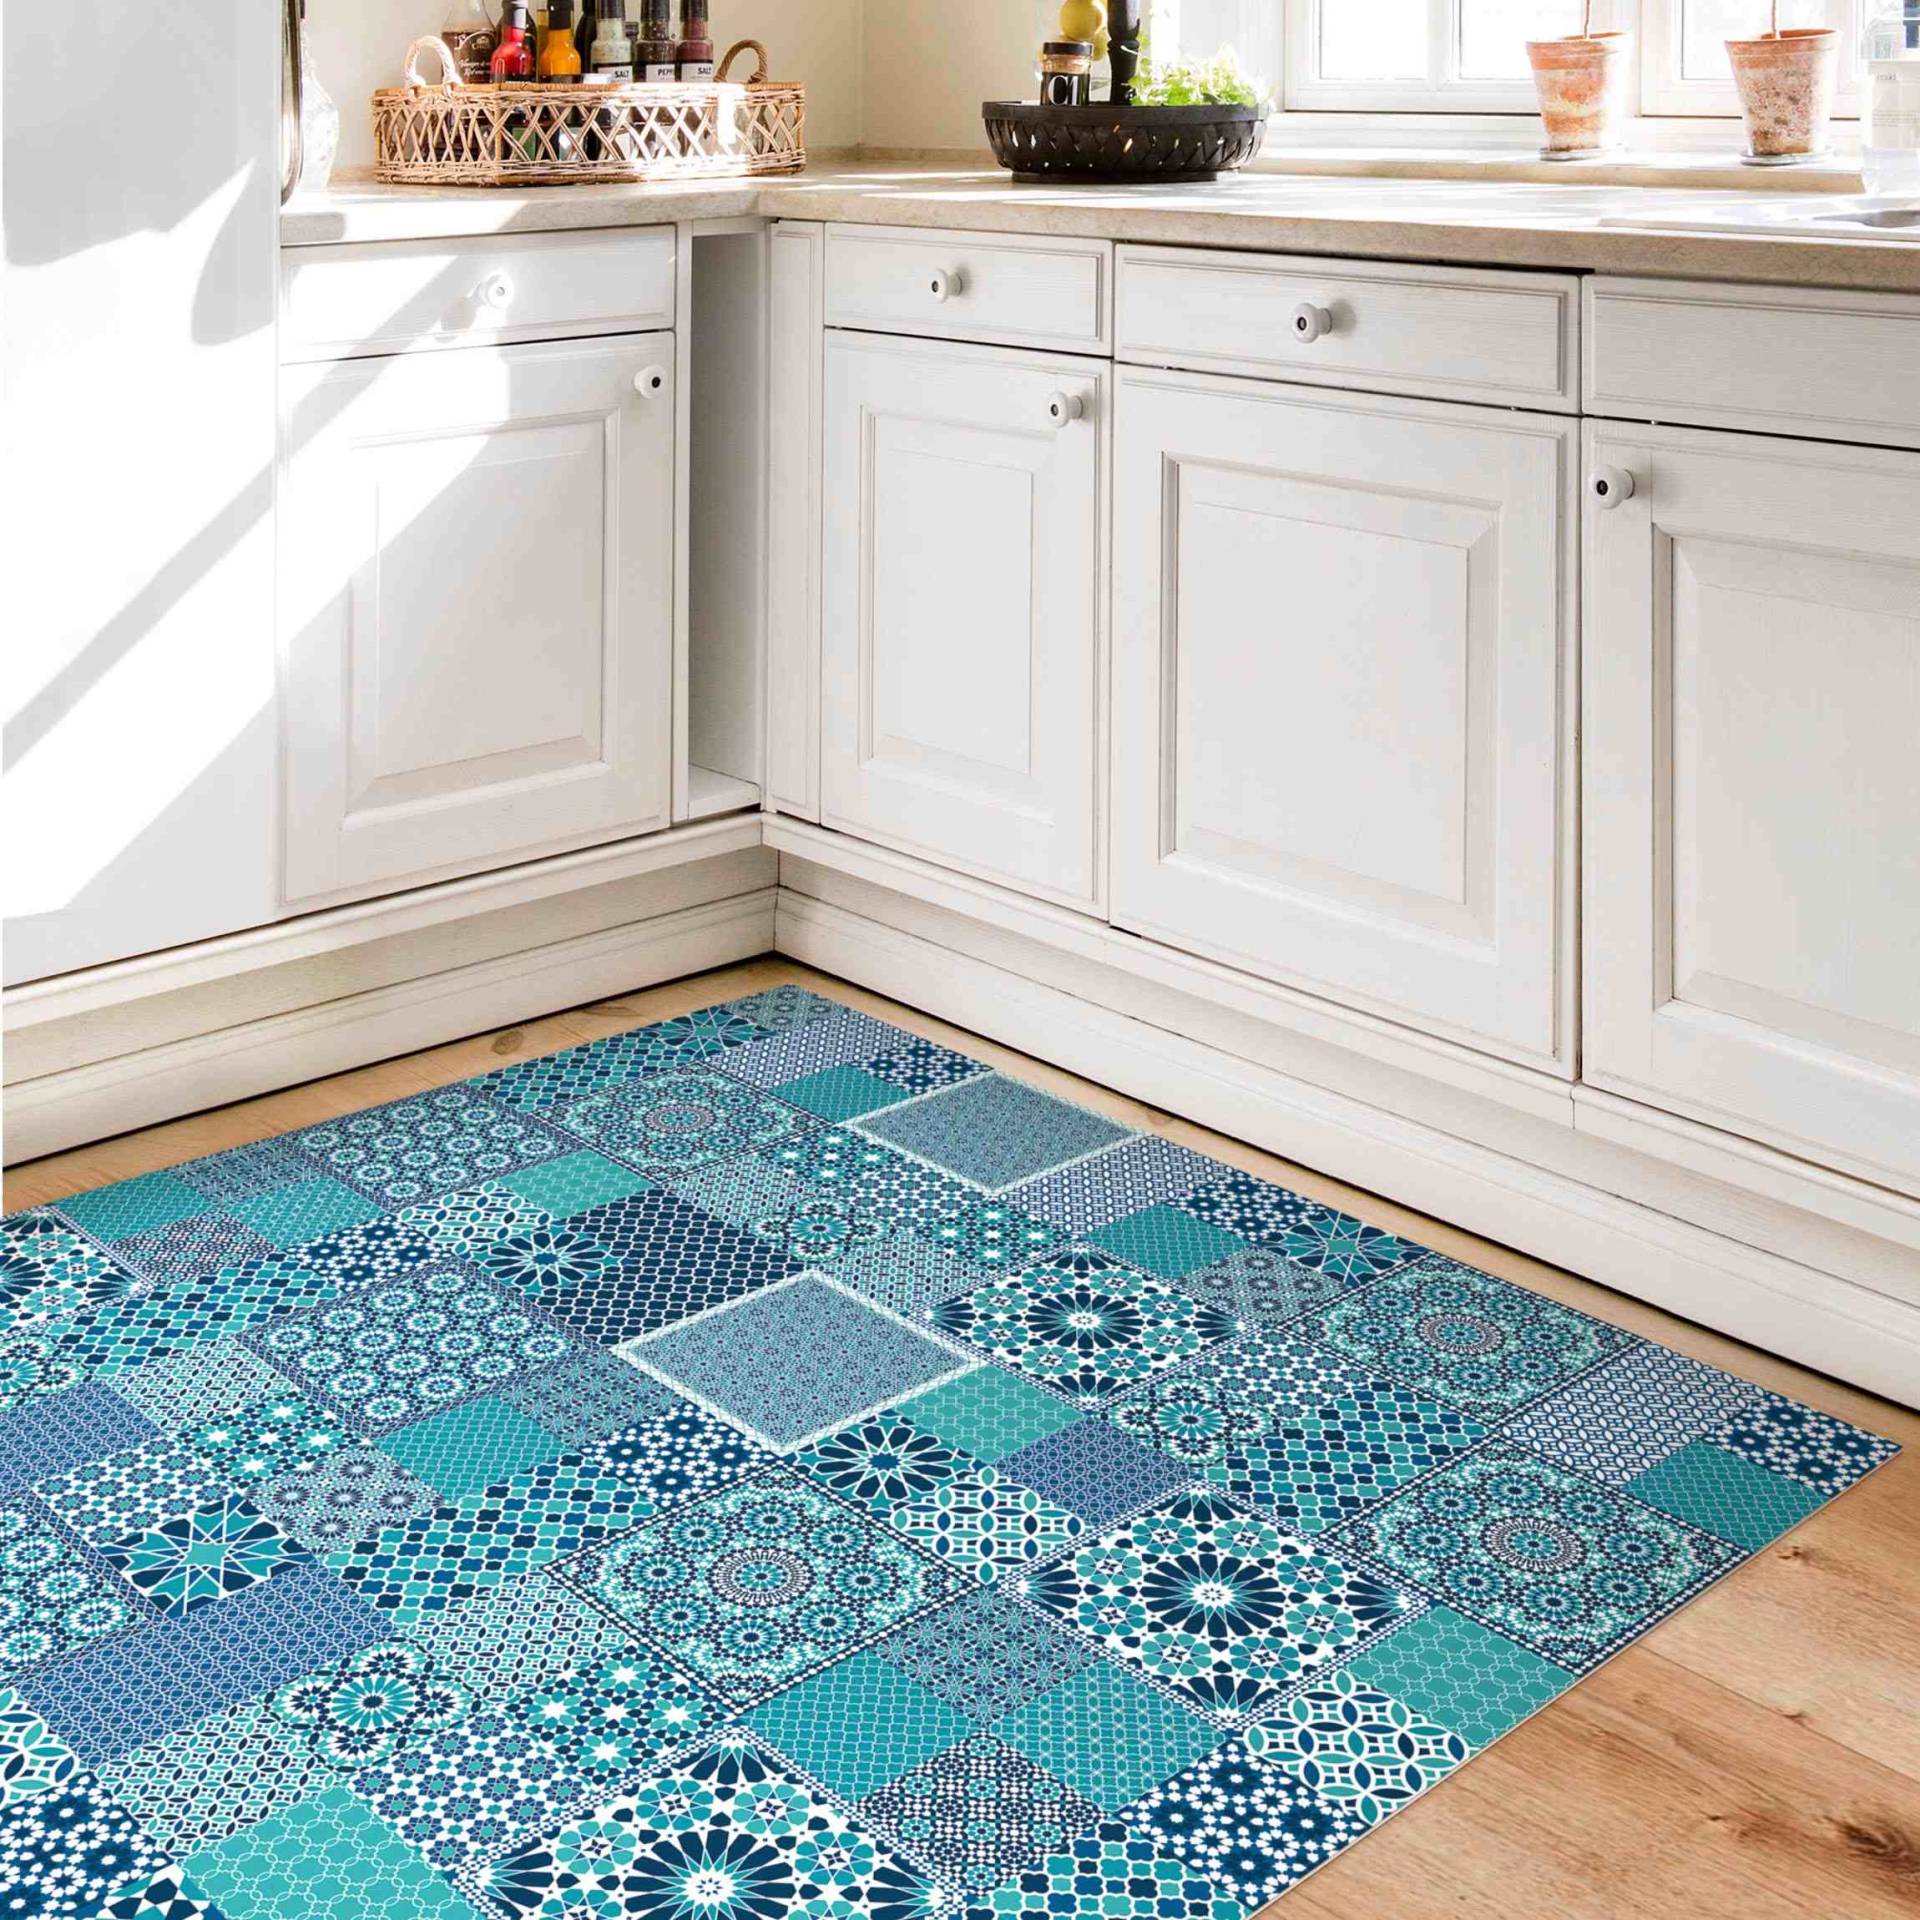 Vinyl-Teppich Marokkanische Mosaikfliesen türkis blau von Klebefieber